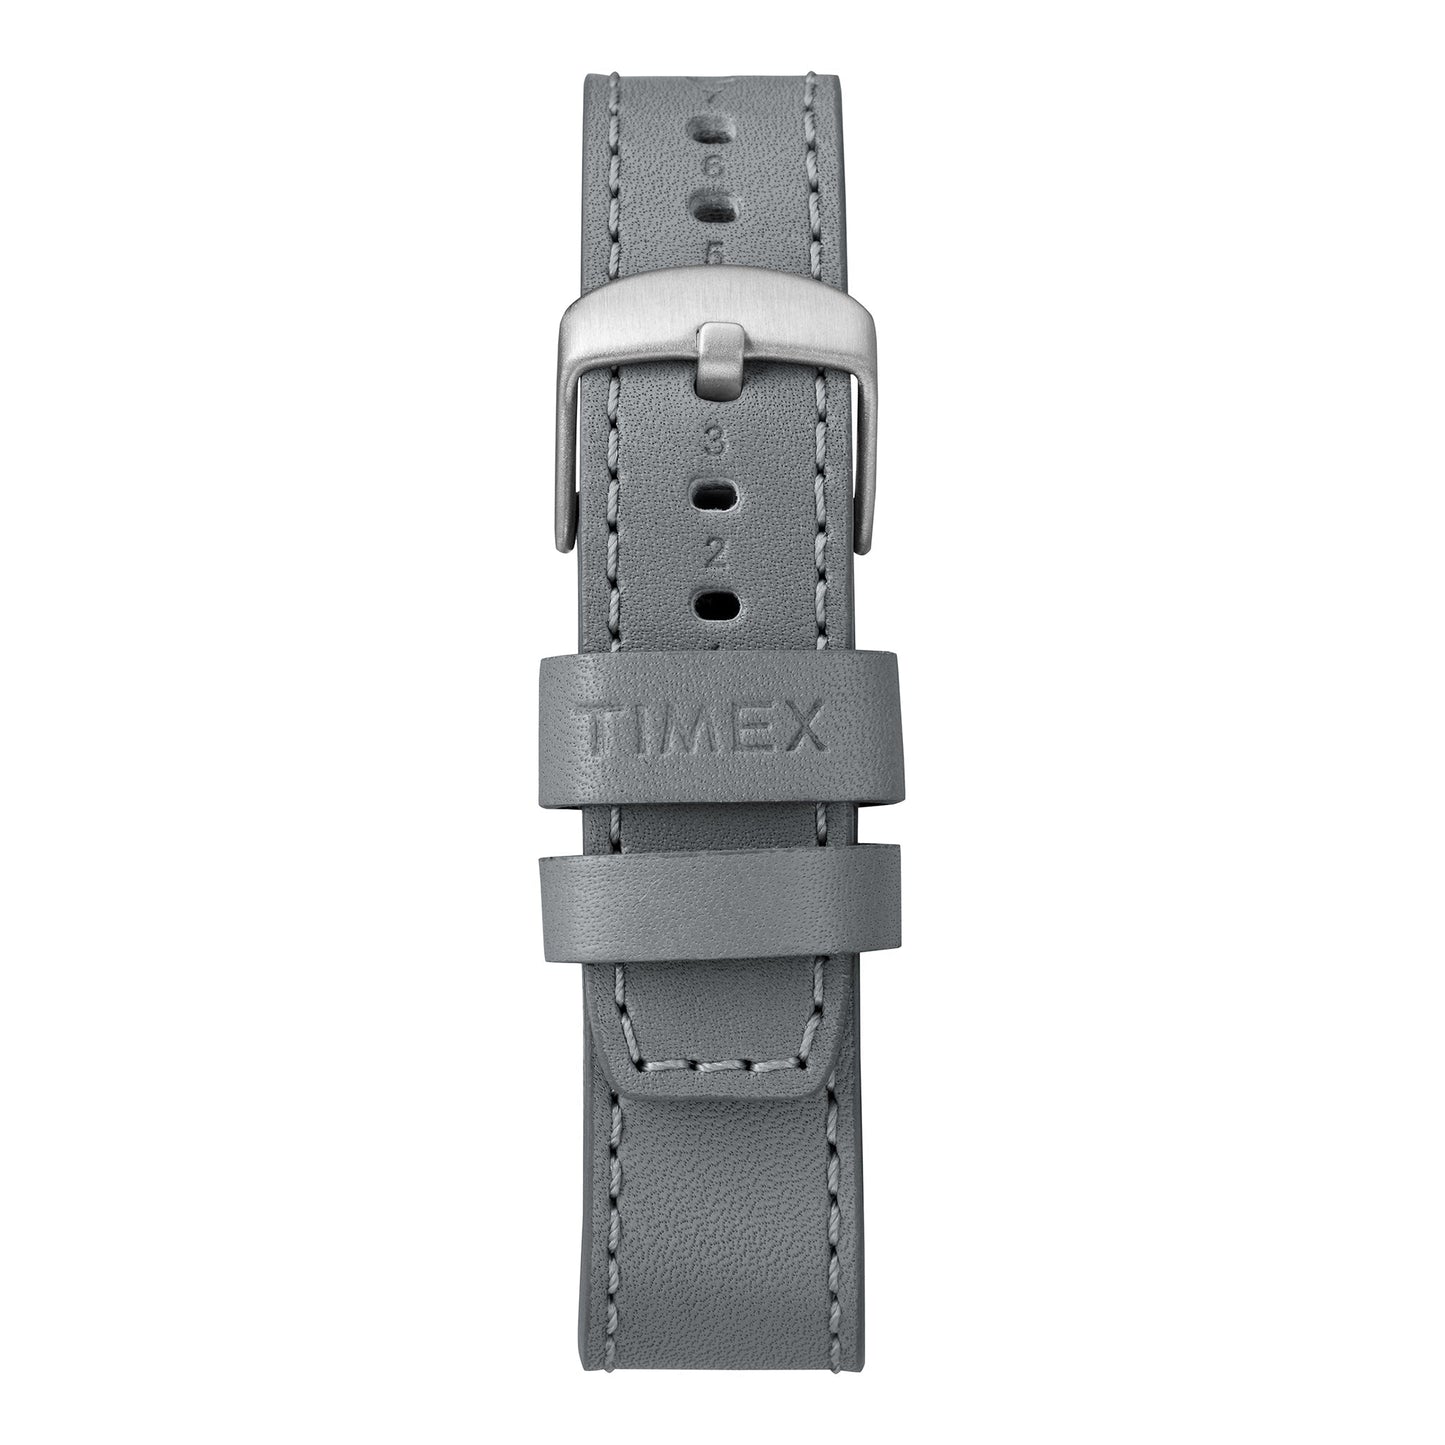 TW2R71000 TIMEX Unisex's Watch